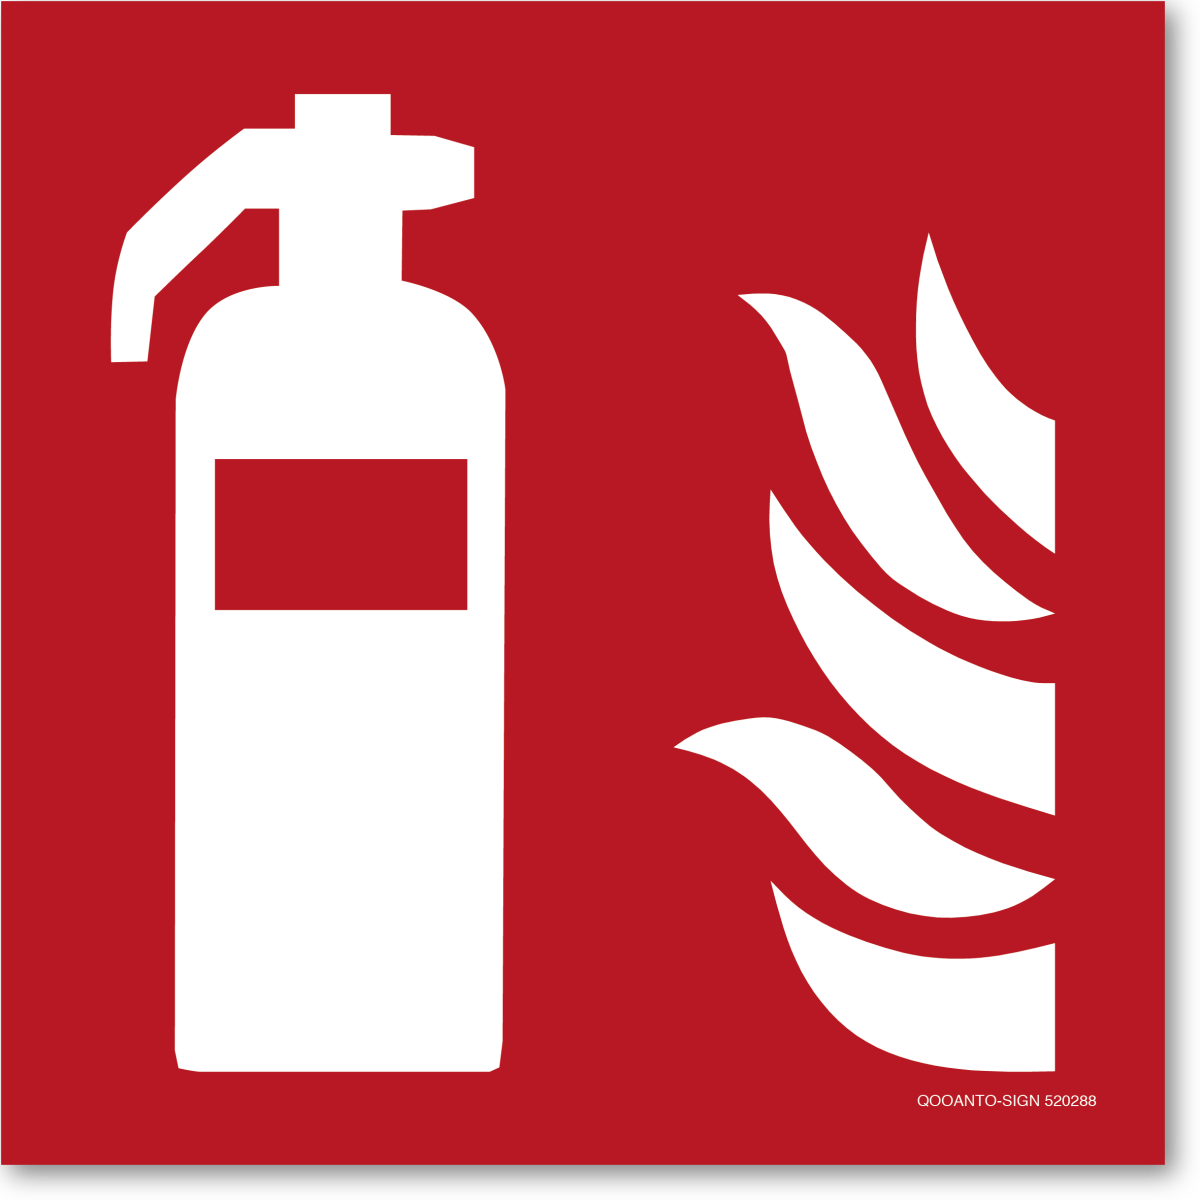 Feuerlöscher, EN ISO 7010, F001 Brandschutzschild oder Aufkleber aus Alu-Verbund oder Selbstklebefolie mit UV-Schutz - QOOANTO-SIGN